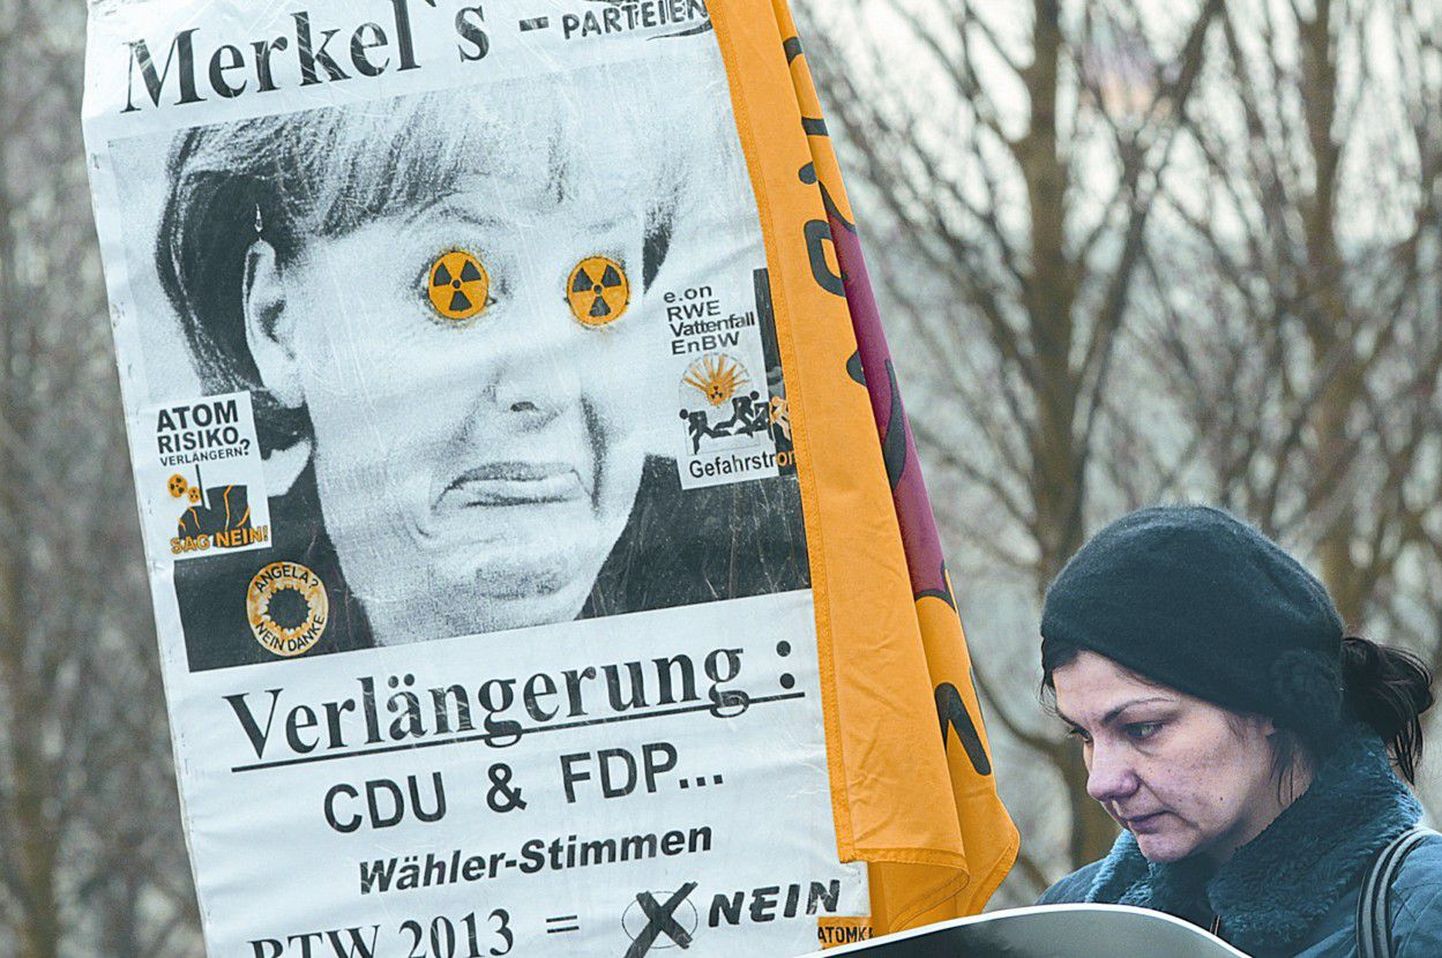 В Европе 15 марта прошли акции протеста против АЭС. На фото демонстрантка из Германии с изображением Ангелы Меркель.